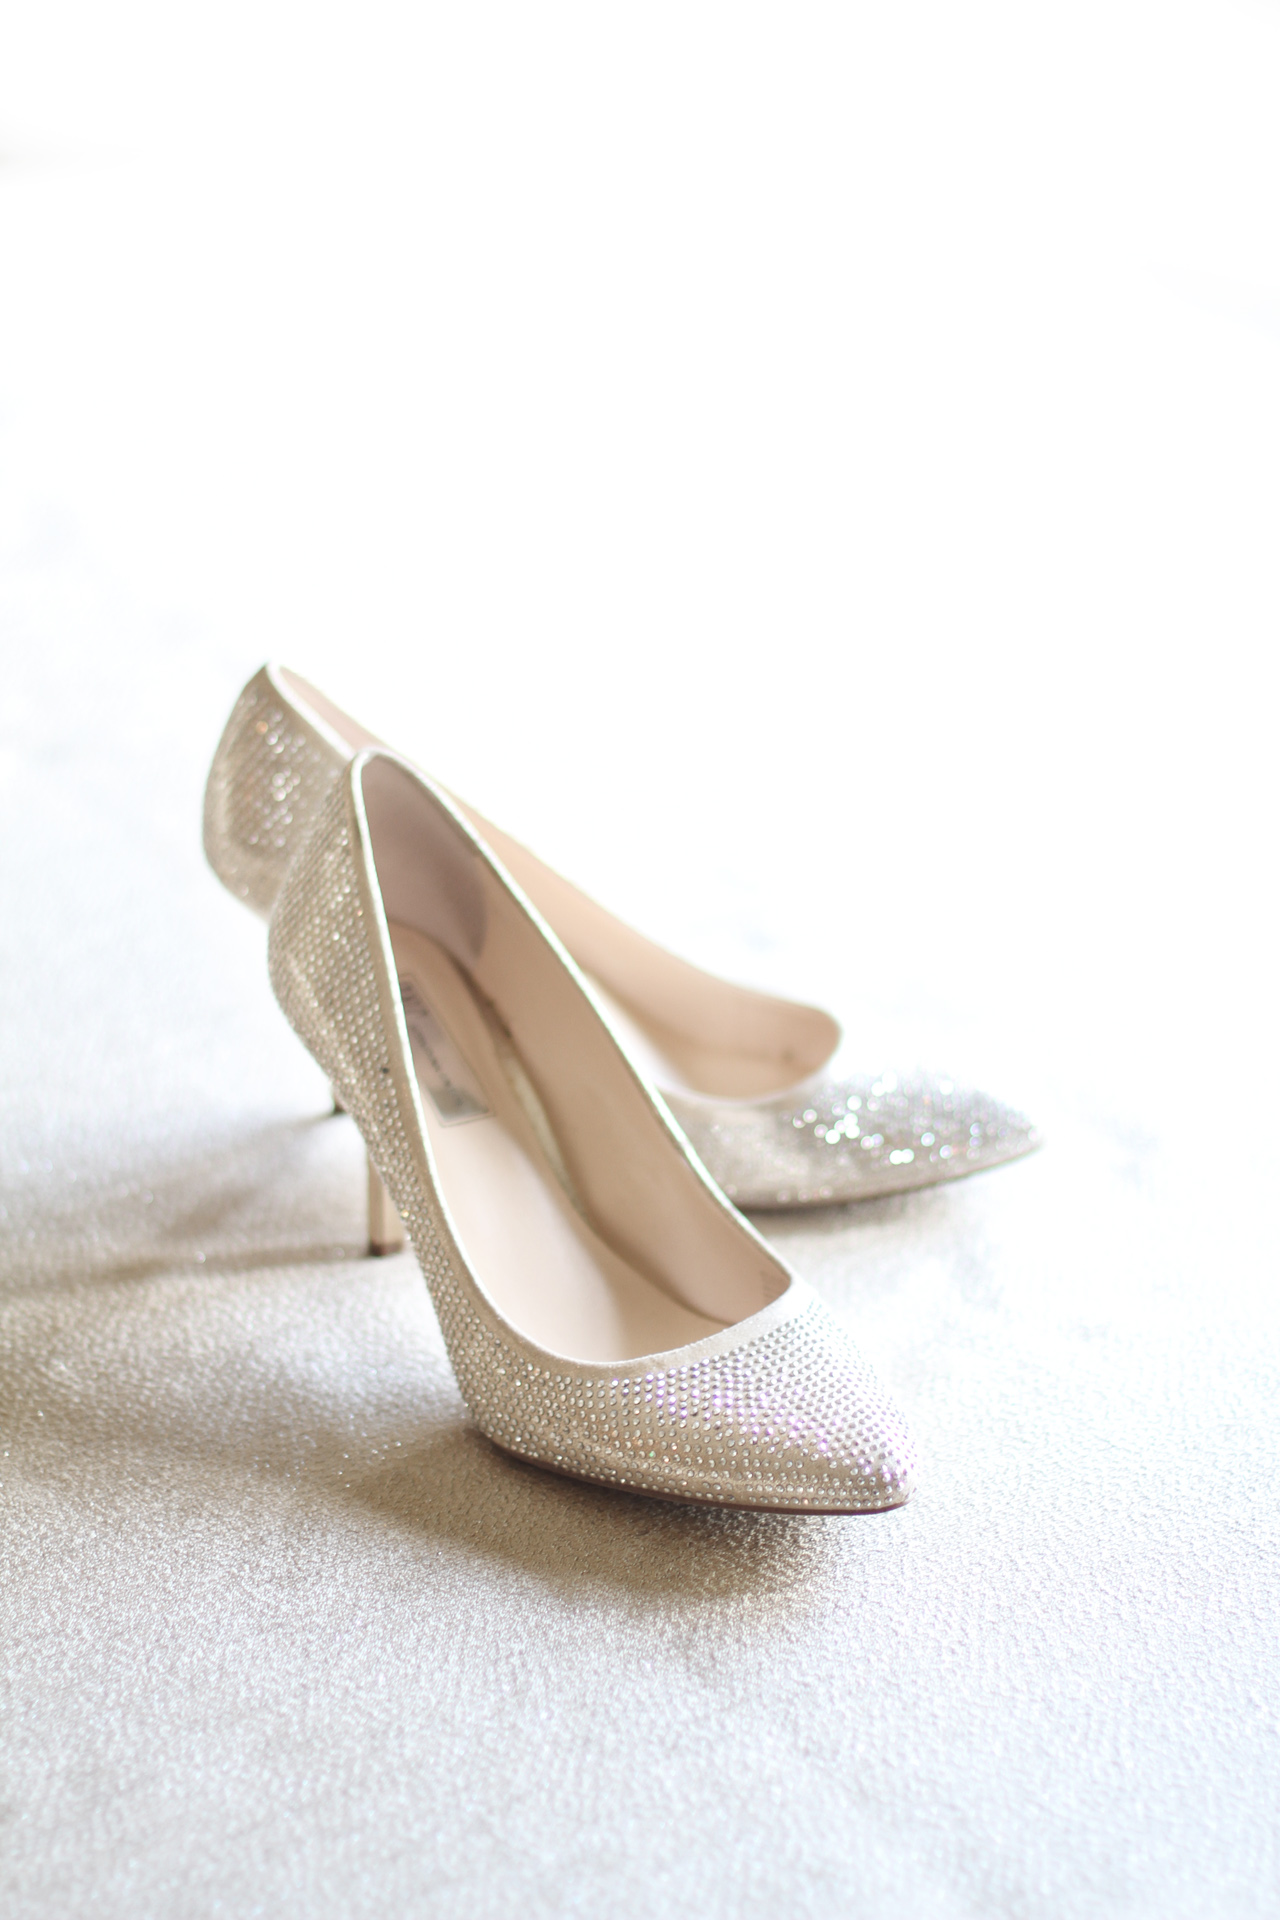 wedding-shoes-araujo